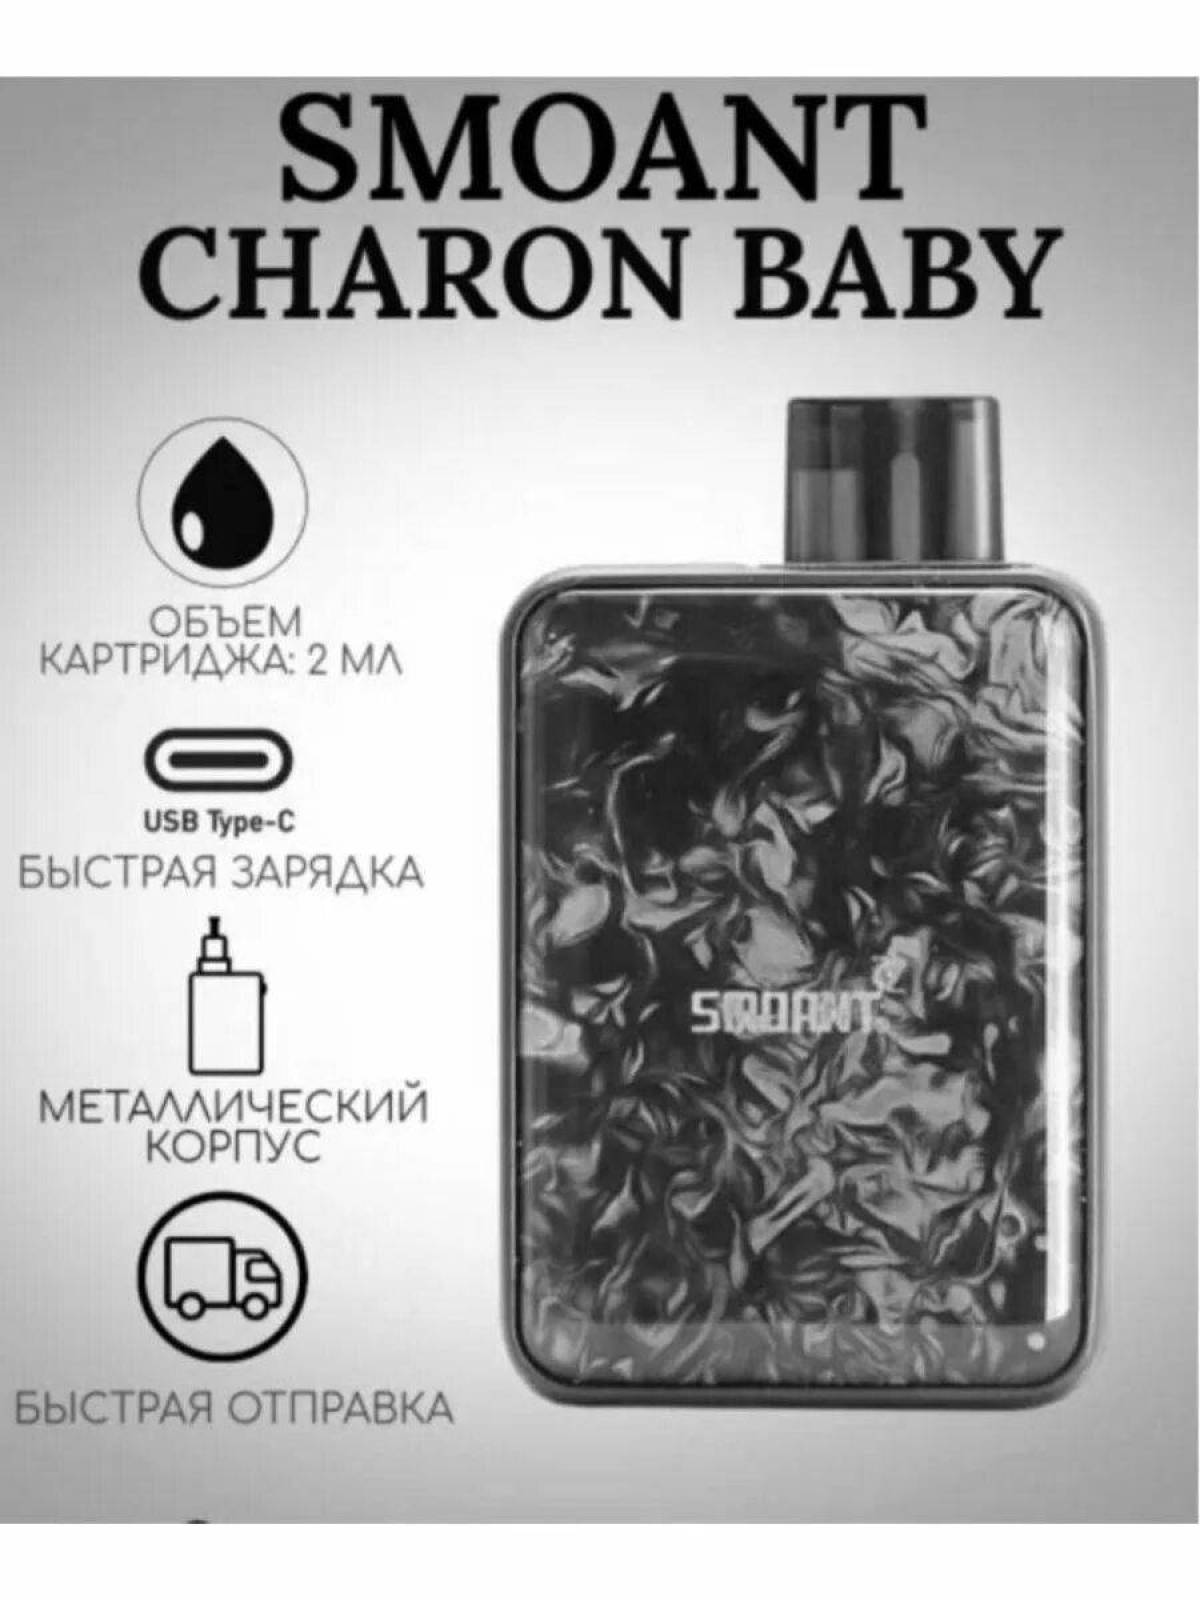 Charon baby plus